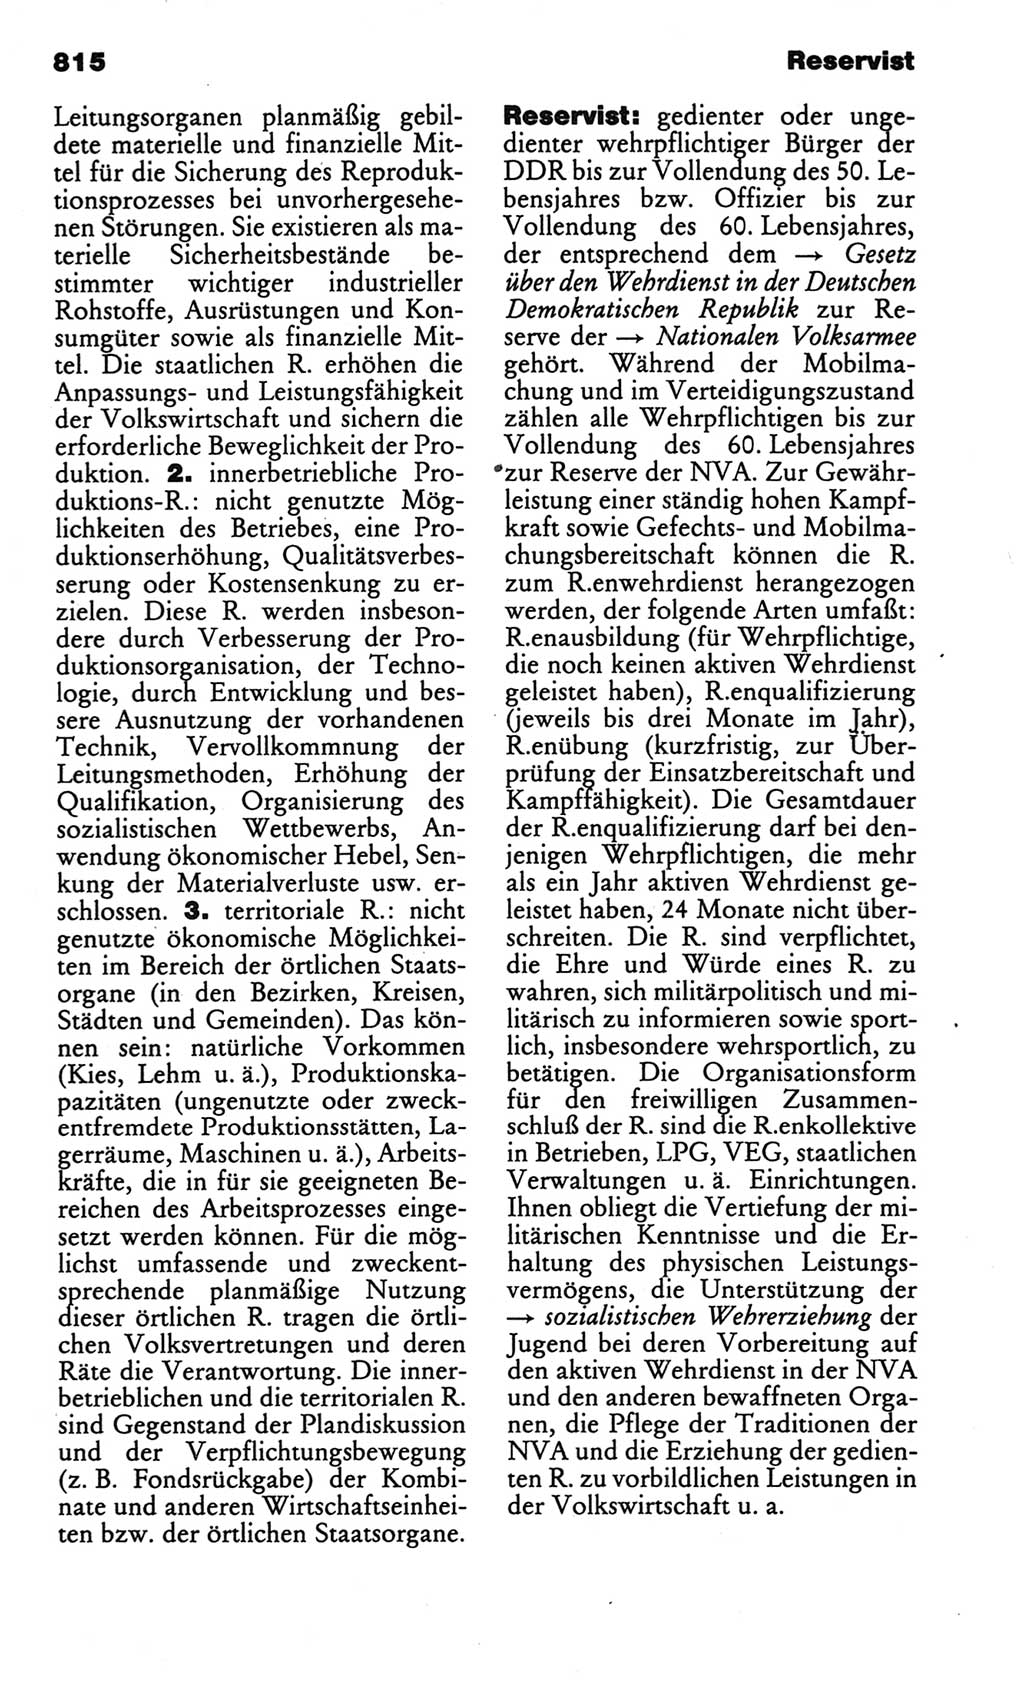 Kleines politisches Wörterbuch [Deutsche Demokratische Republik (DDR)] 1986, Seite 815 (Kl. pol. Wb. DDR 1986, S. 815)